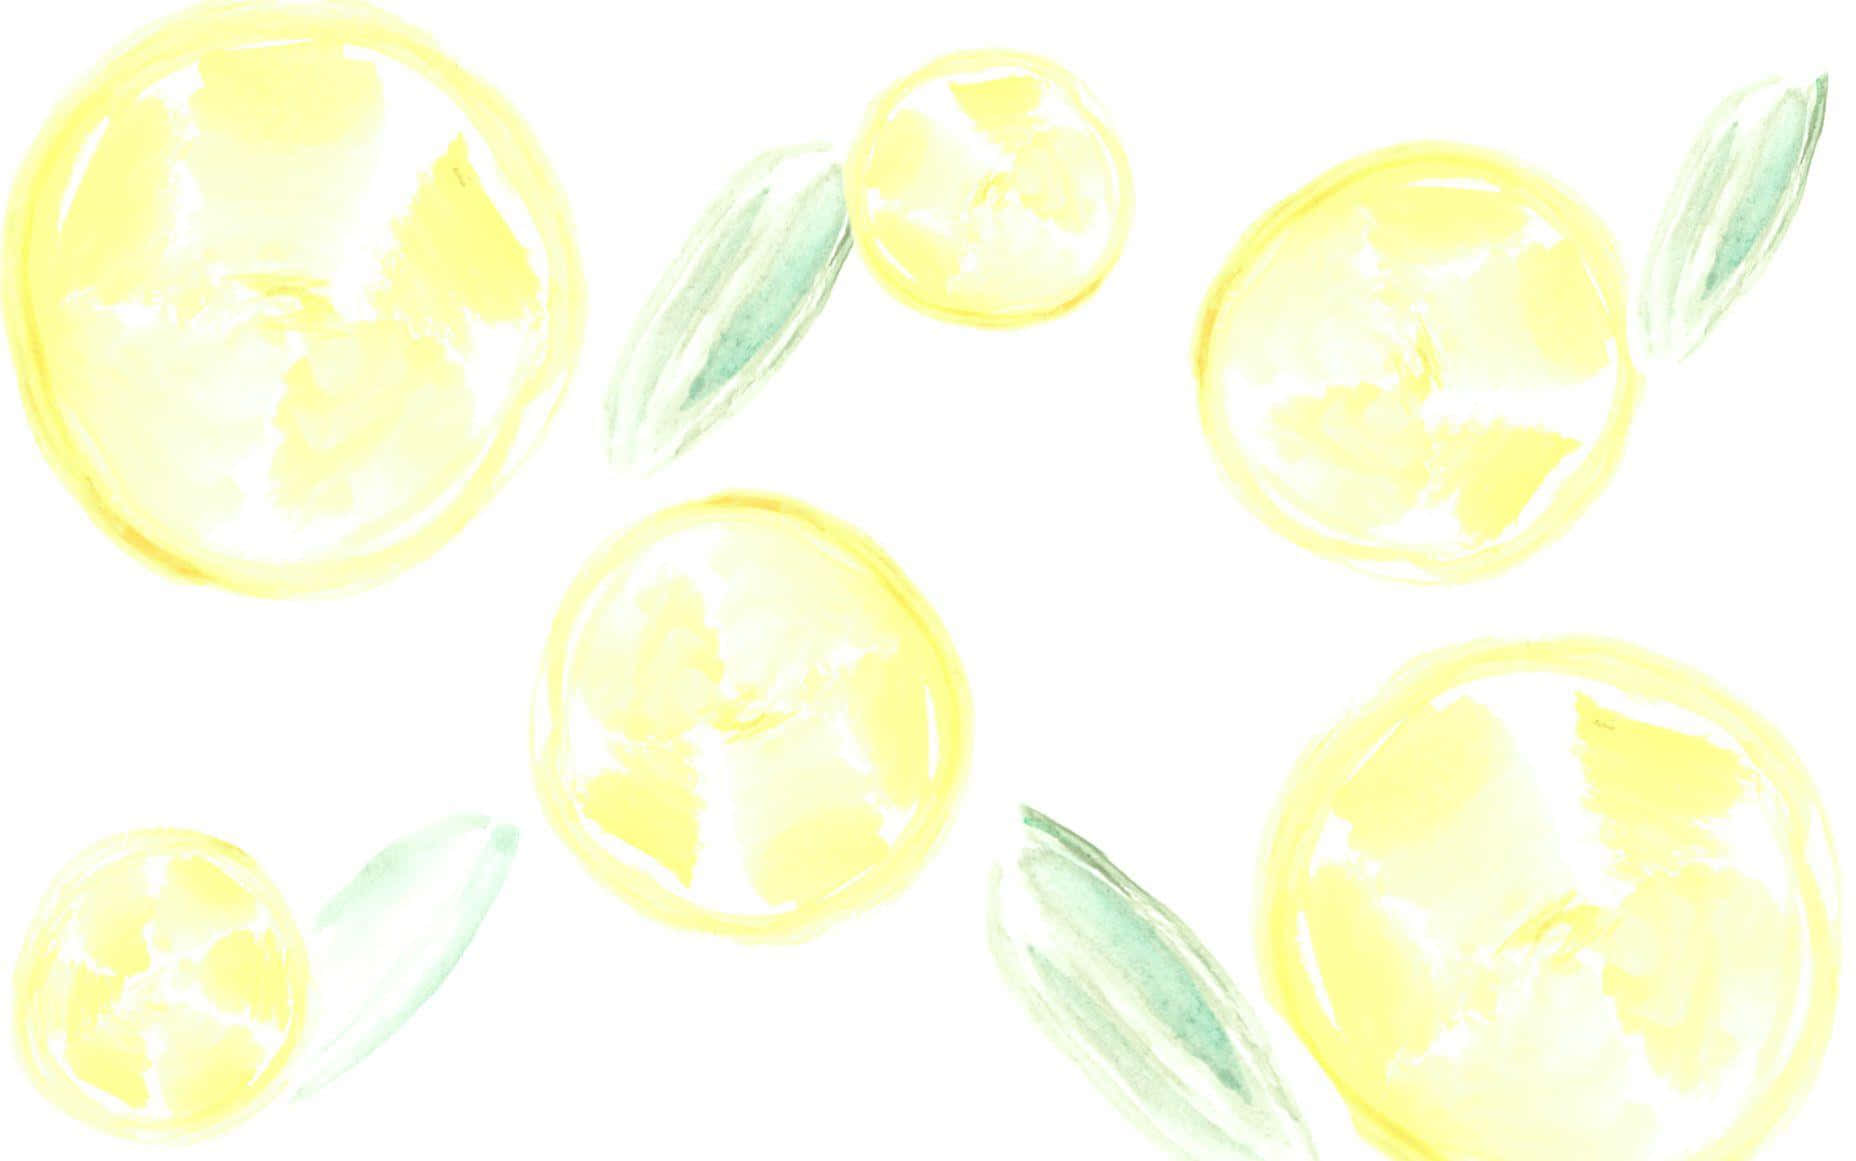 Citronbilleder